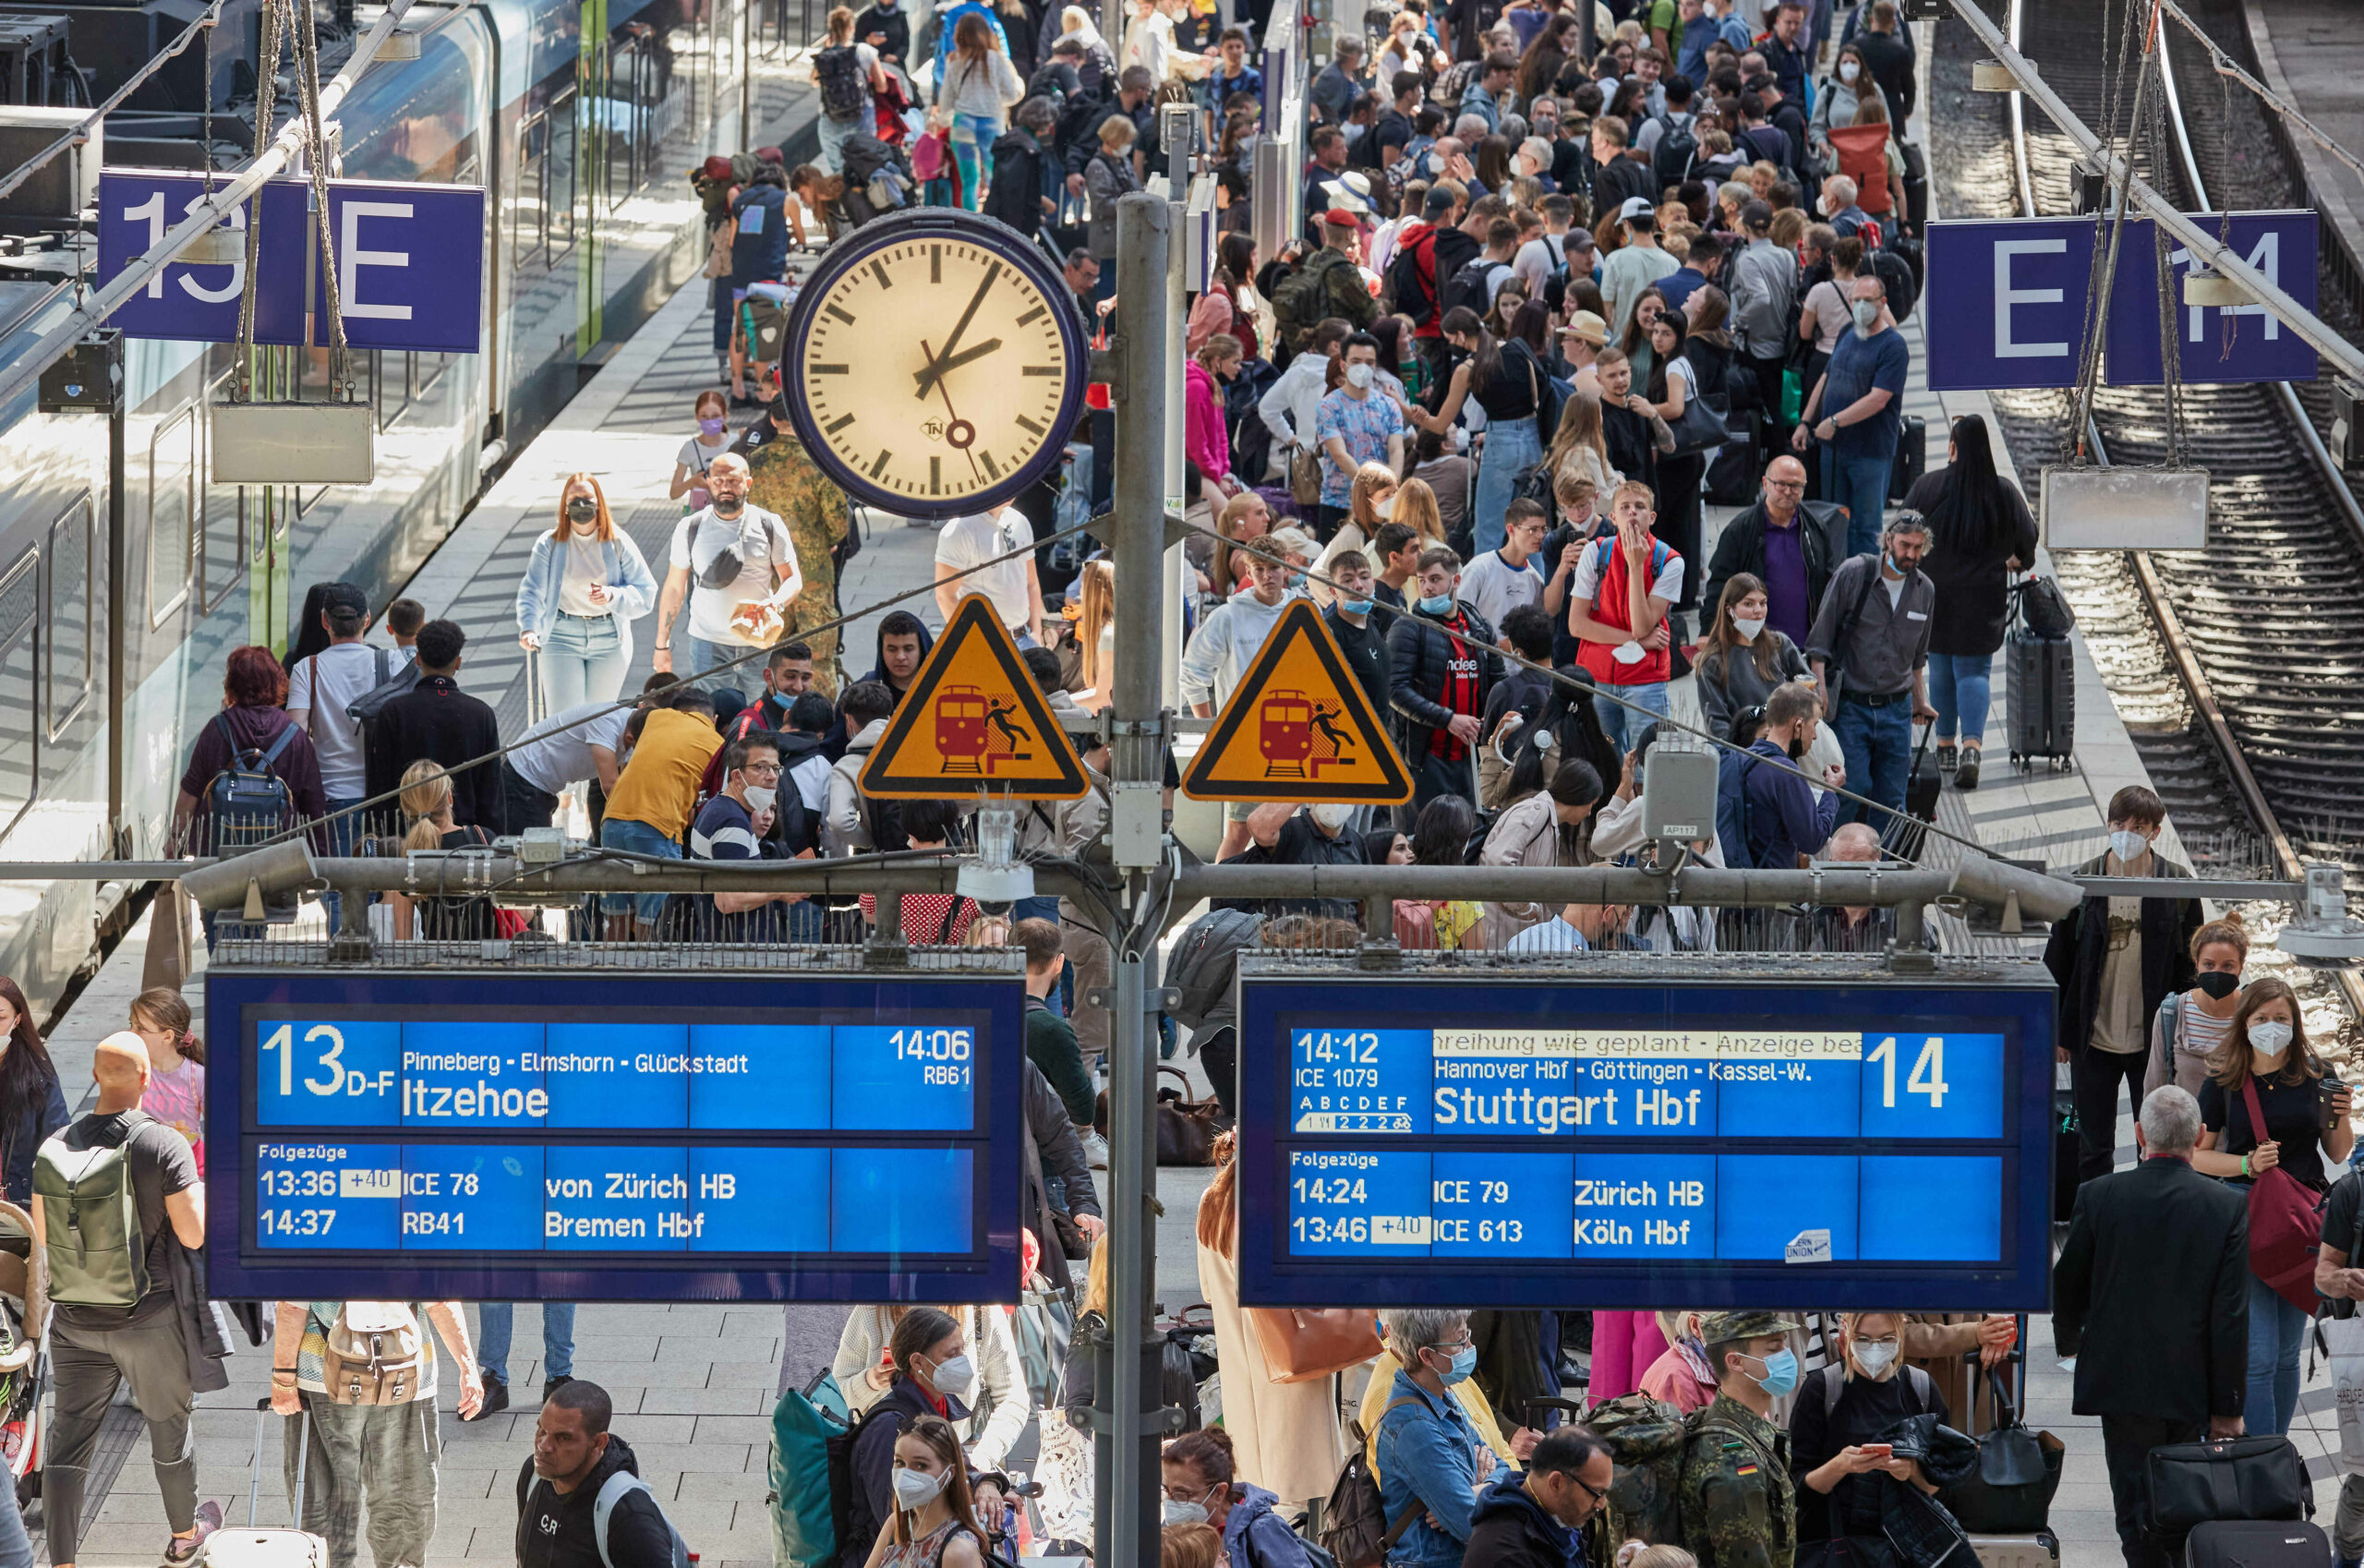 Viele Reisende stehen auf dem Bahnsteigen 13 und 14 im Hauptbahnhof